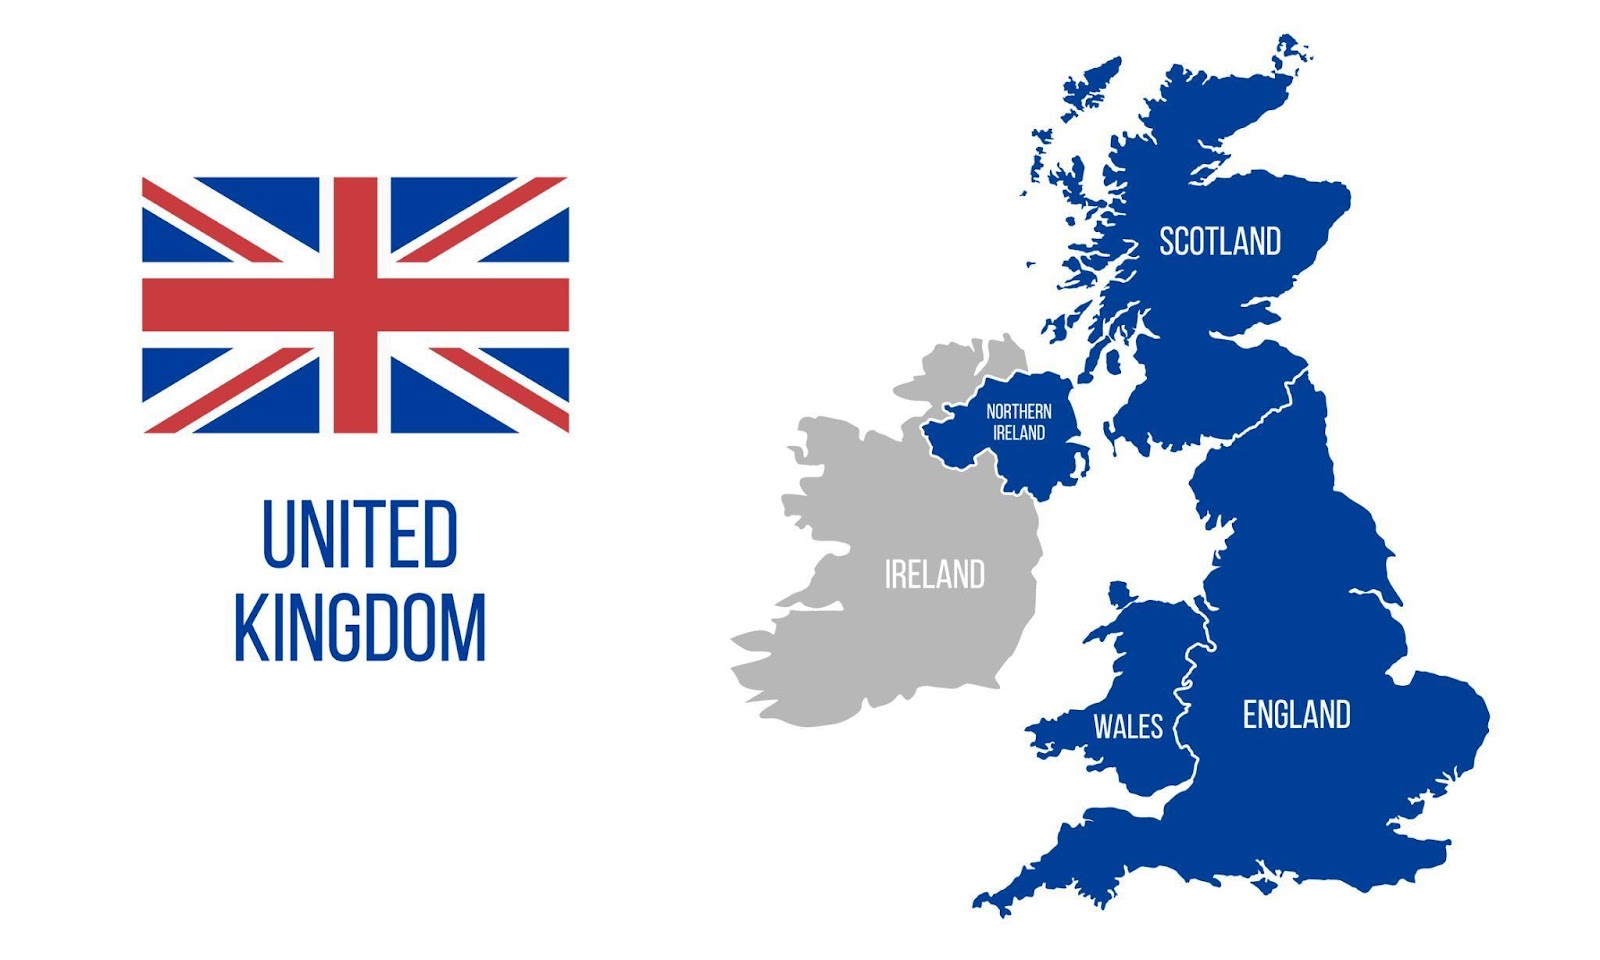 Huomaa, että vaikka Yhdistynyt kuningaskunta (UK) ja Iso-Britannia ovat hyvin samankaltaisia, ne eivät ole synonyymejä tässä lainsäädännössä